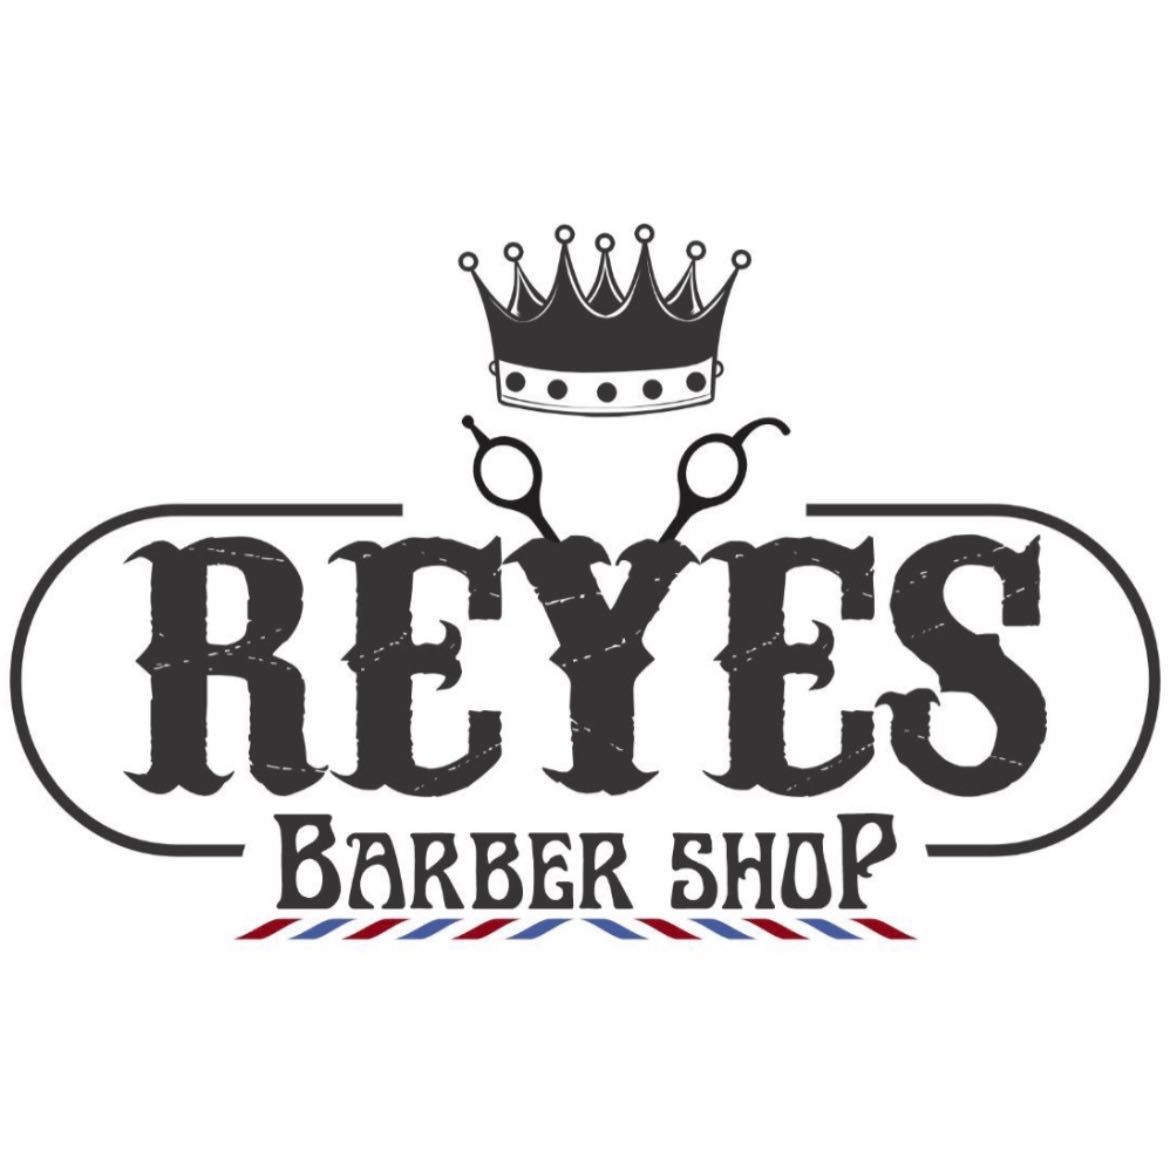 Reyes barber shop, 20151 FM 529 Ste 400, 20151 FM 529 Ste 400, Houston, 77449